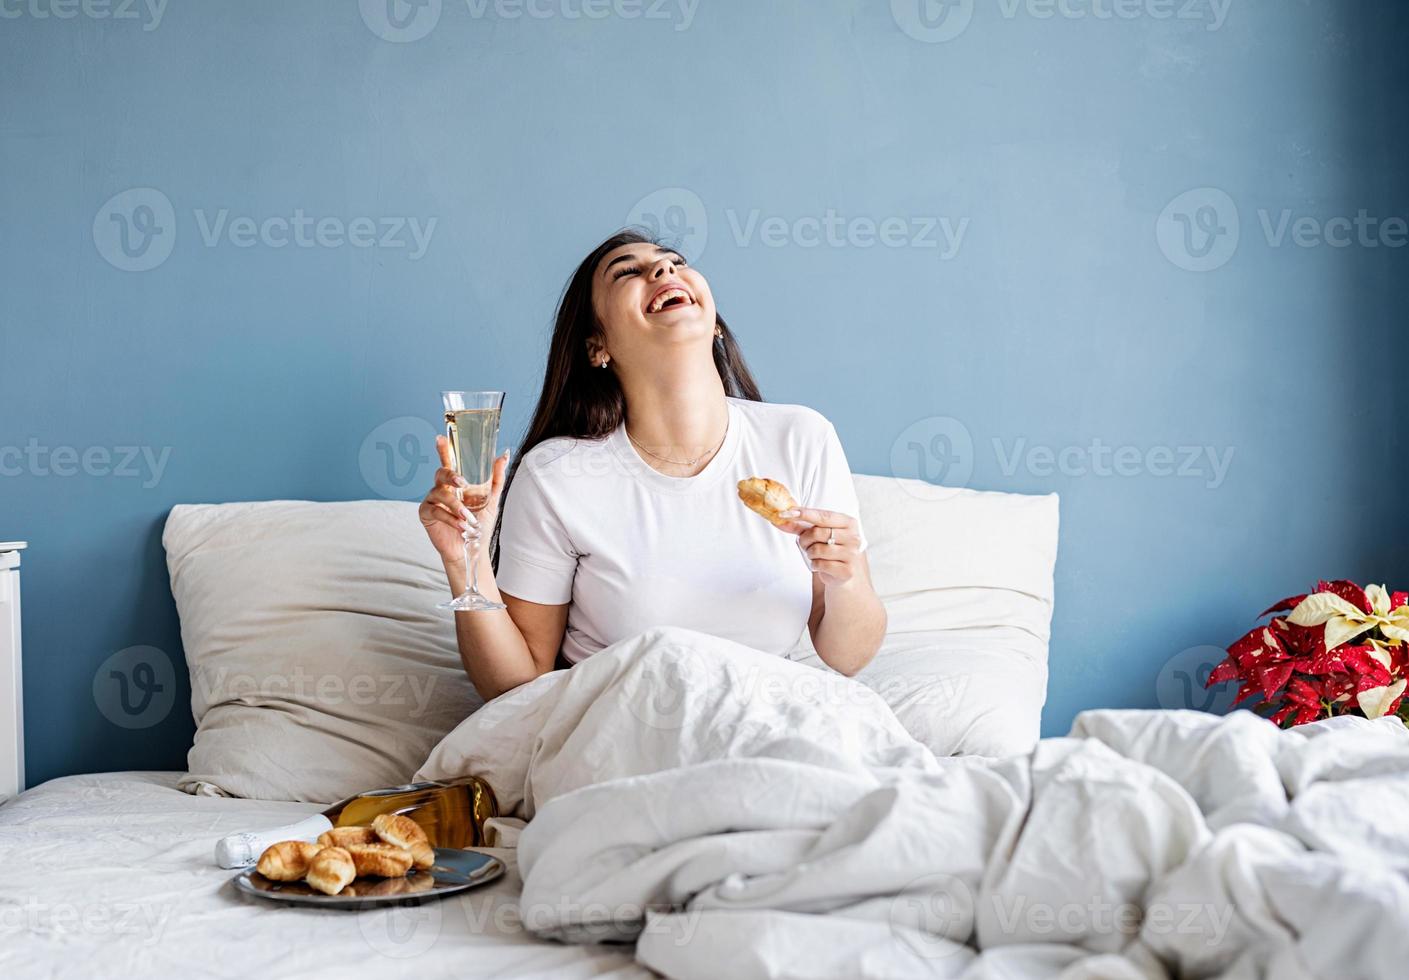 jovem morena sentada acordada na cama com balões em forma de coração vermelho e decorações bebendo champanhe comendo croissants foto